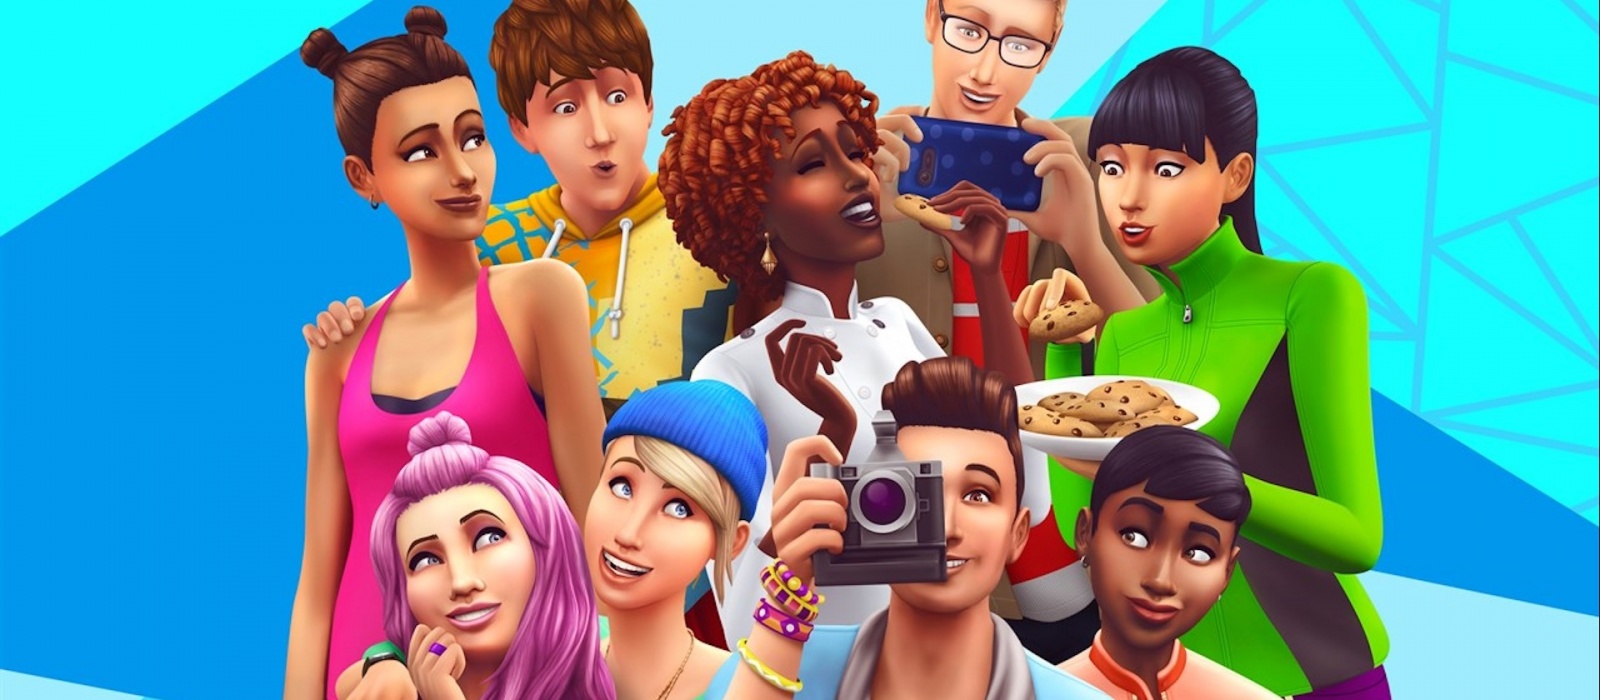 Халява: Electronic Arts предложила всем пользователям Steam бесплатно опробовать The Sims 4